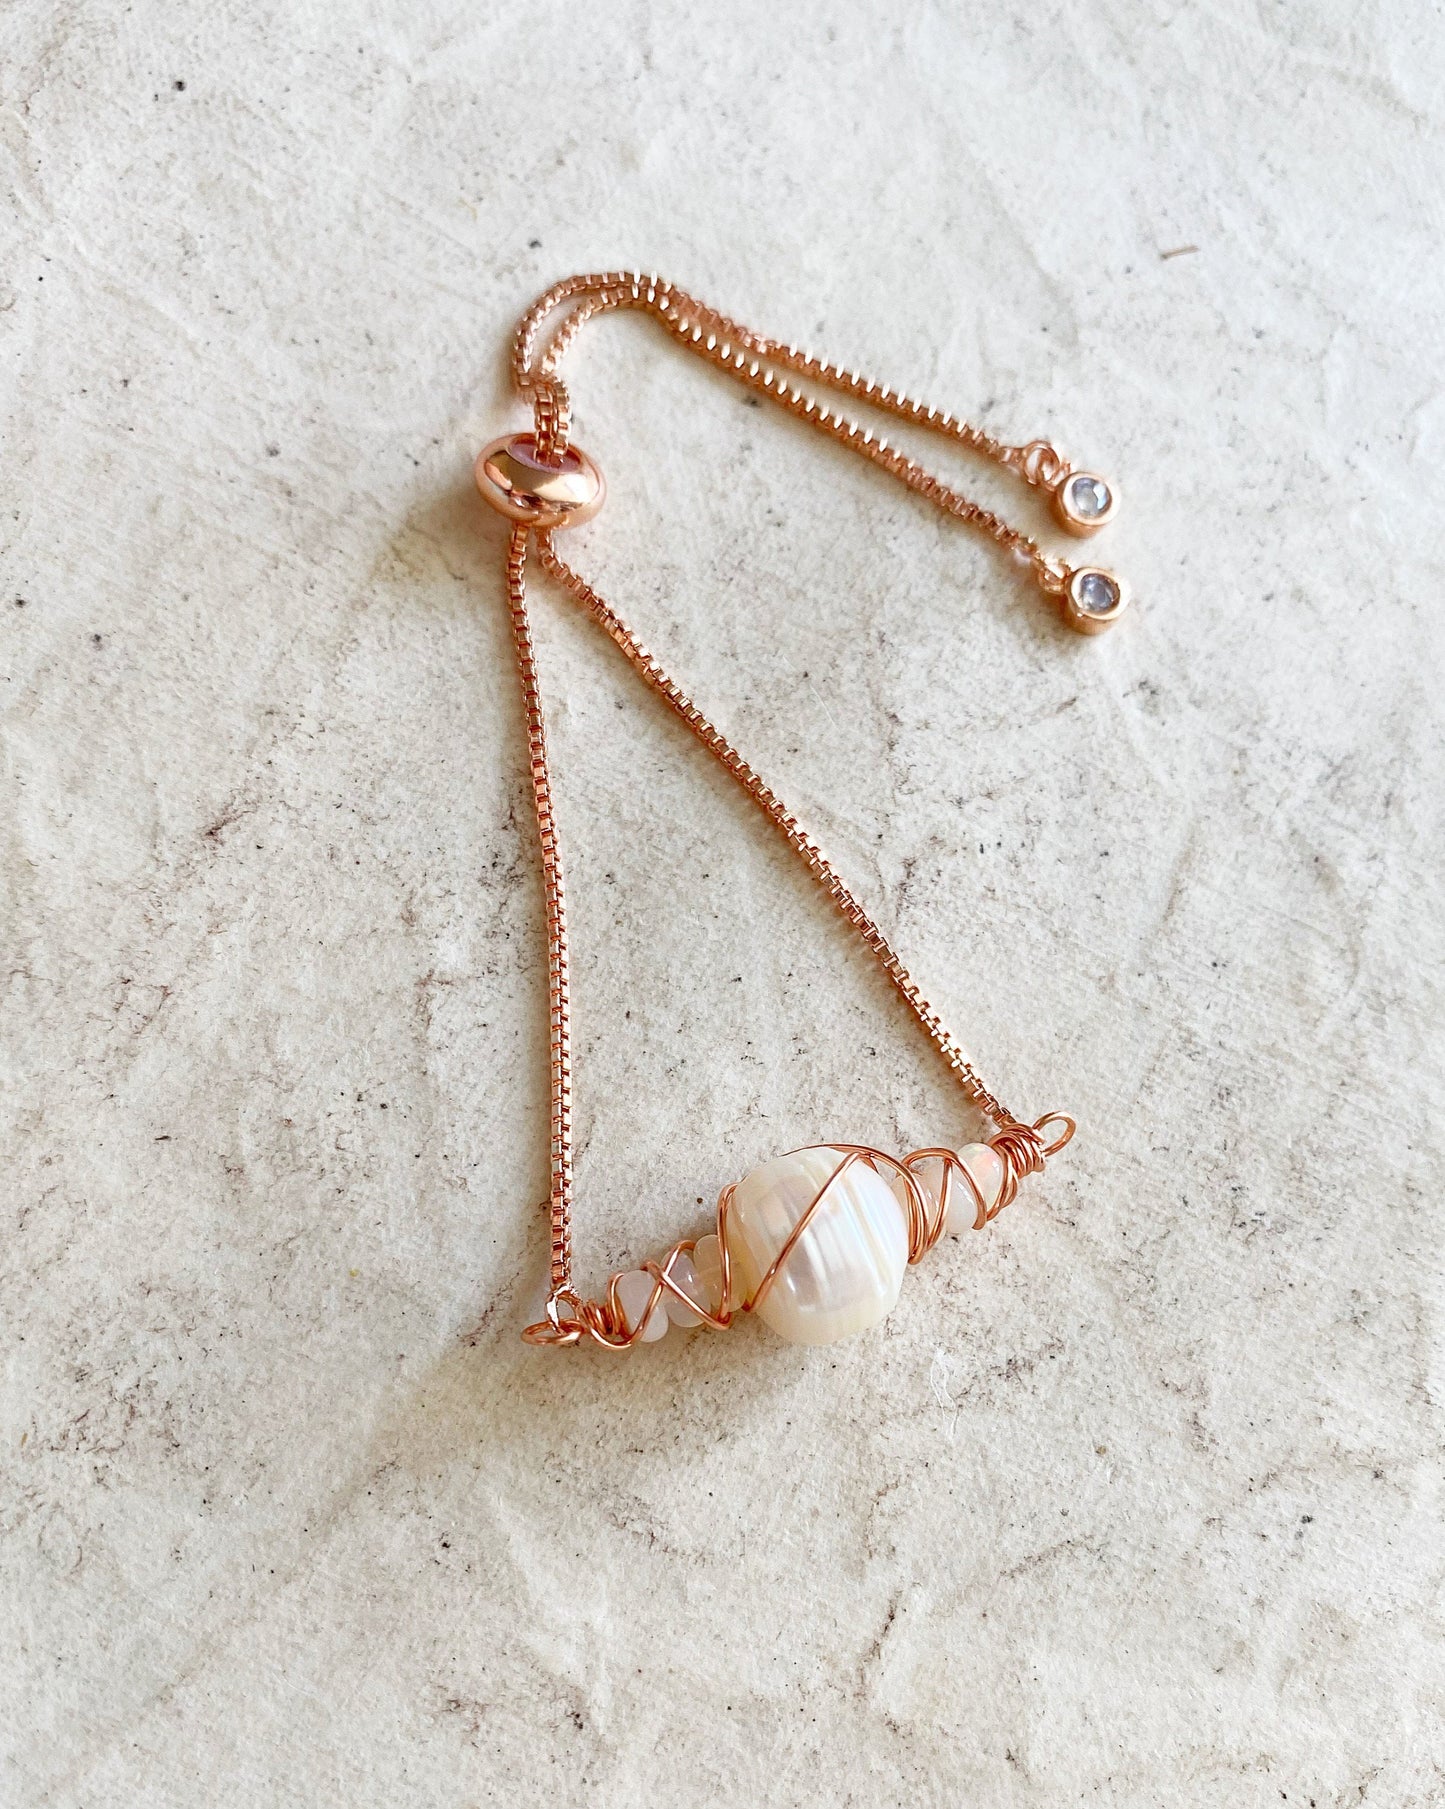 Natural pearl and opal adjustable bracelet